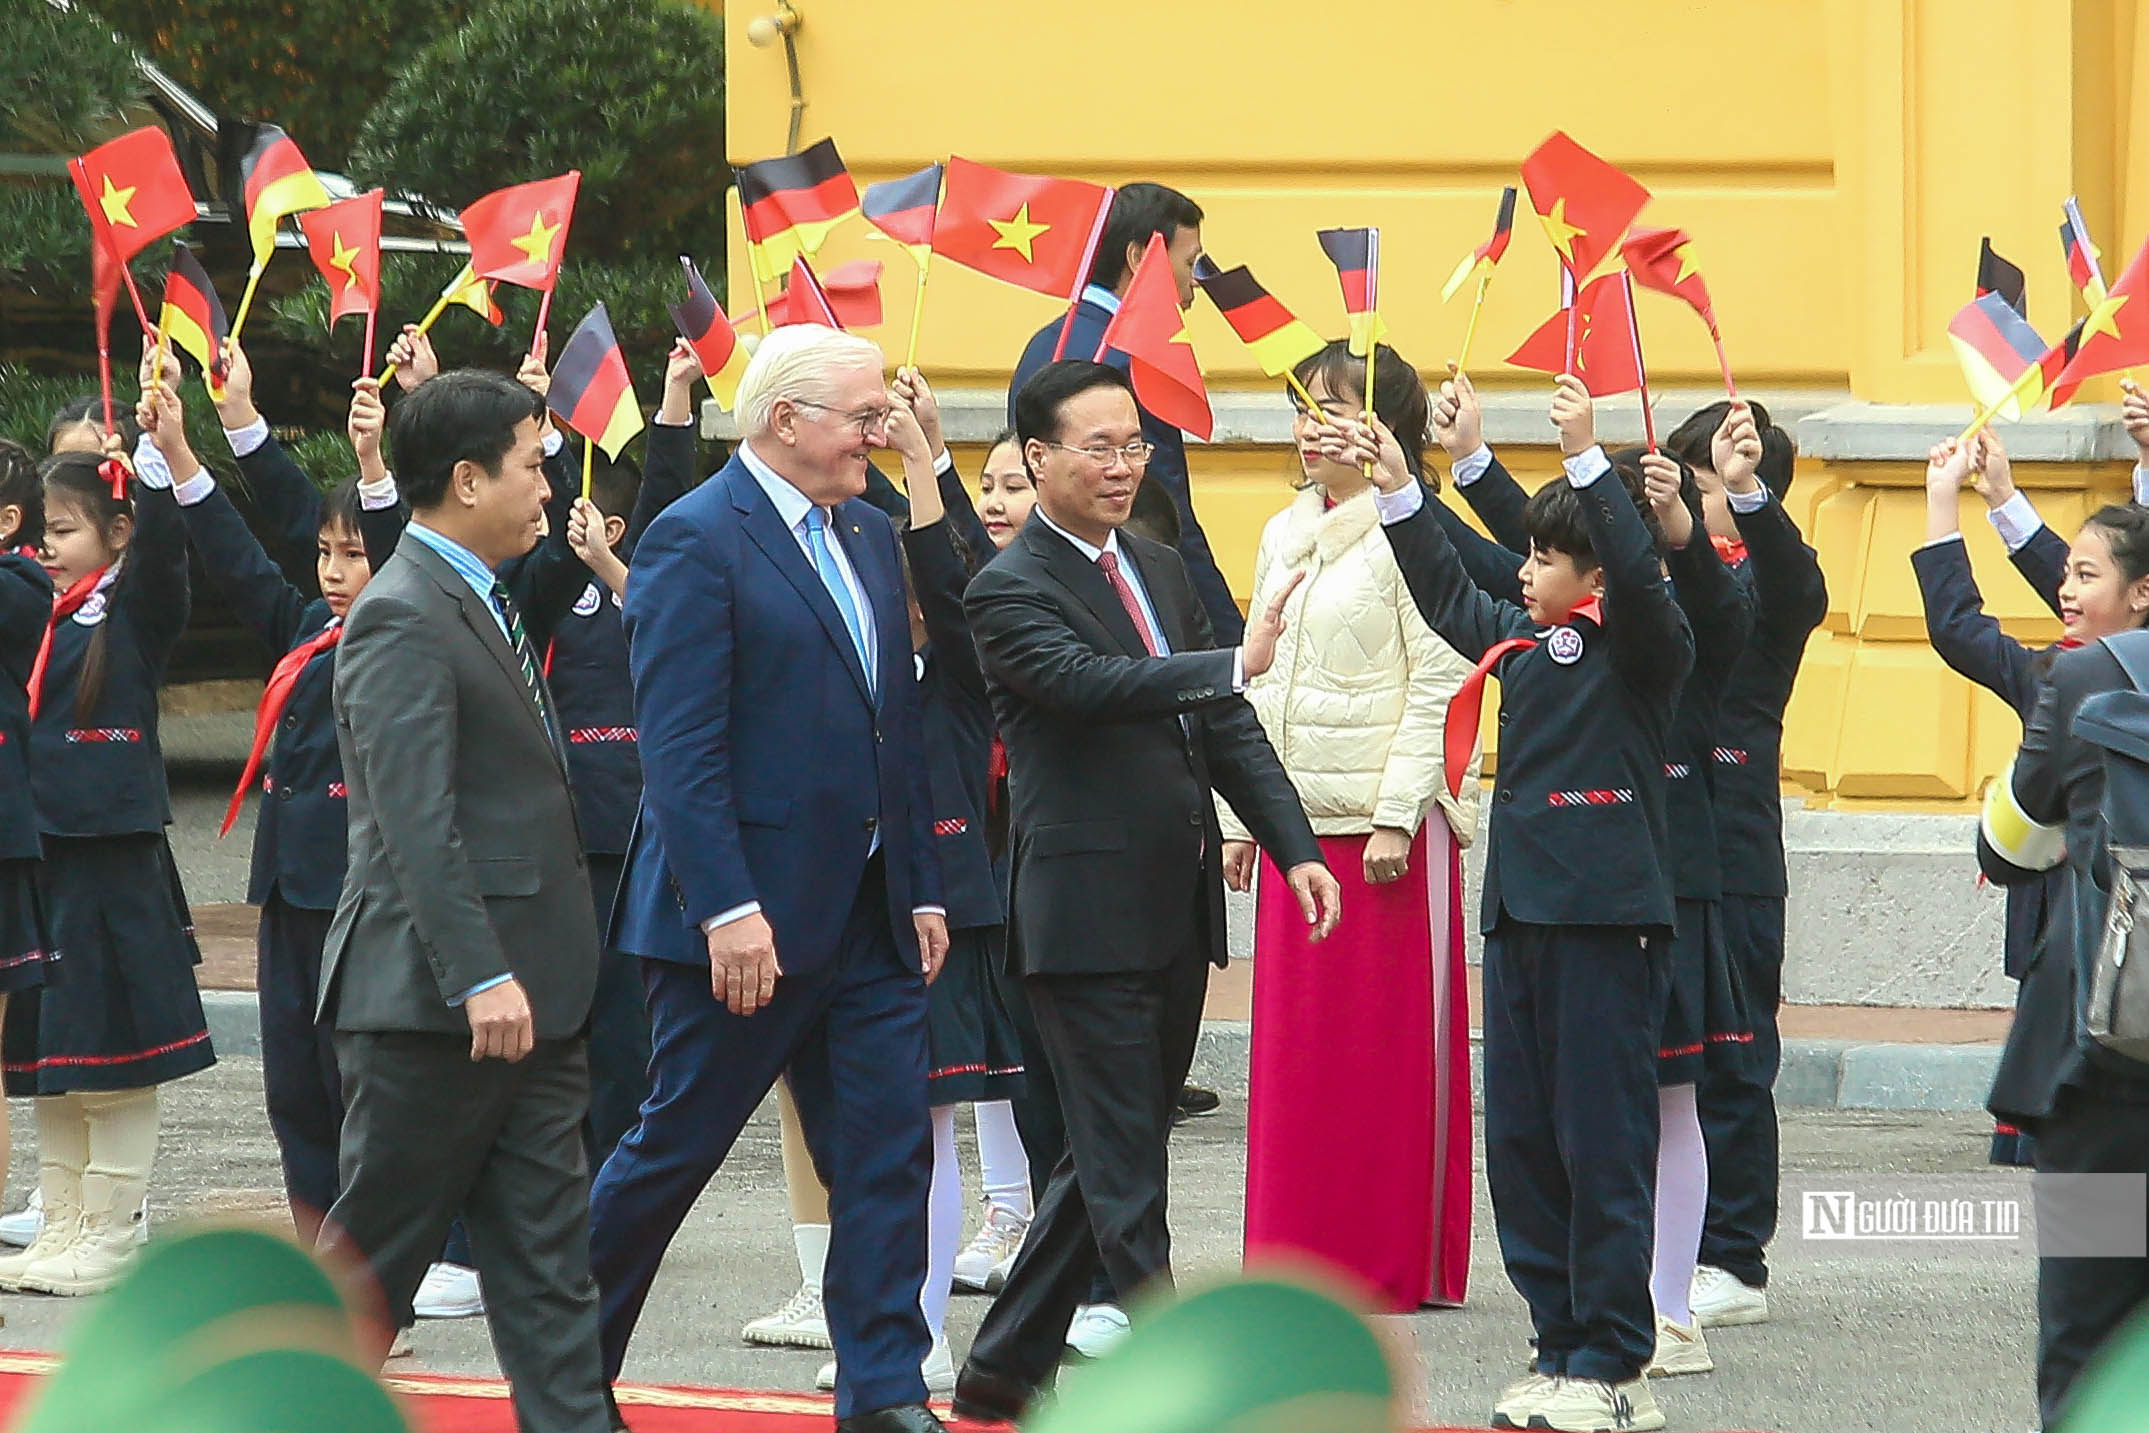 Tiêu điểm - Bắn 21 phát đại bác chào mừng Tổng thống Đức tới thăm Việt Nam (Hình 3).